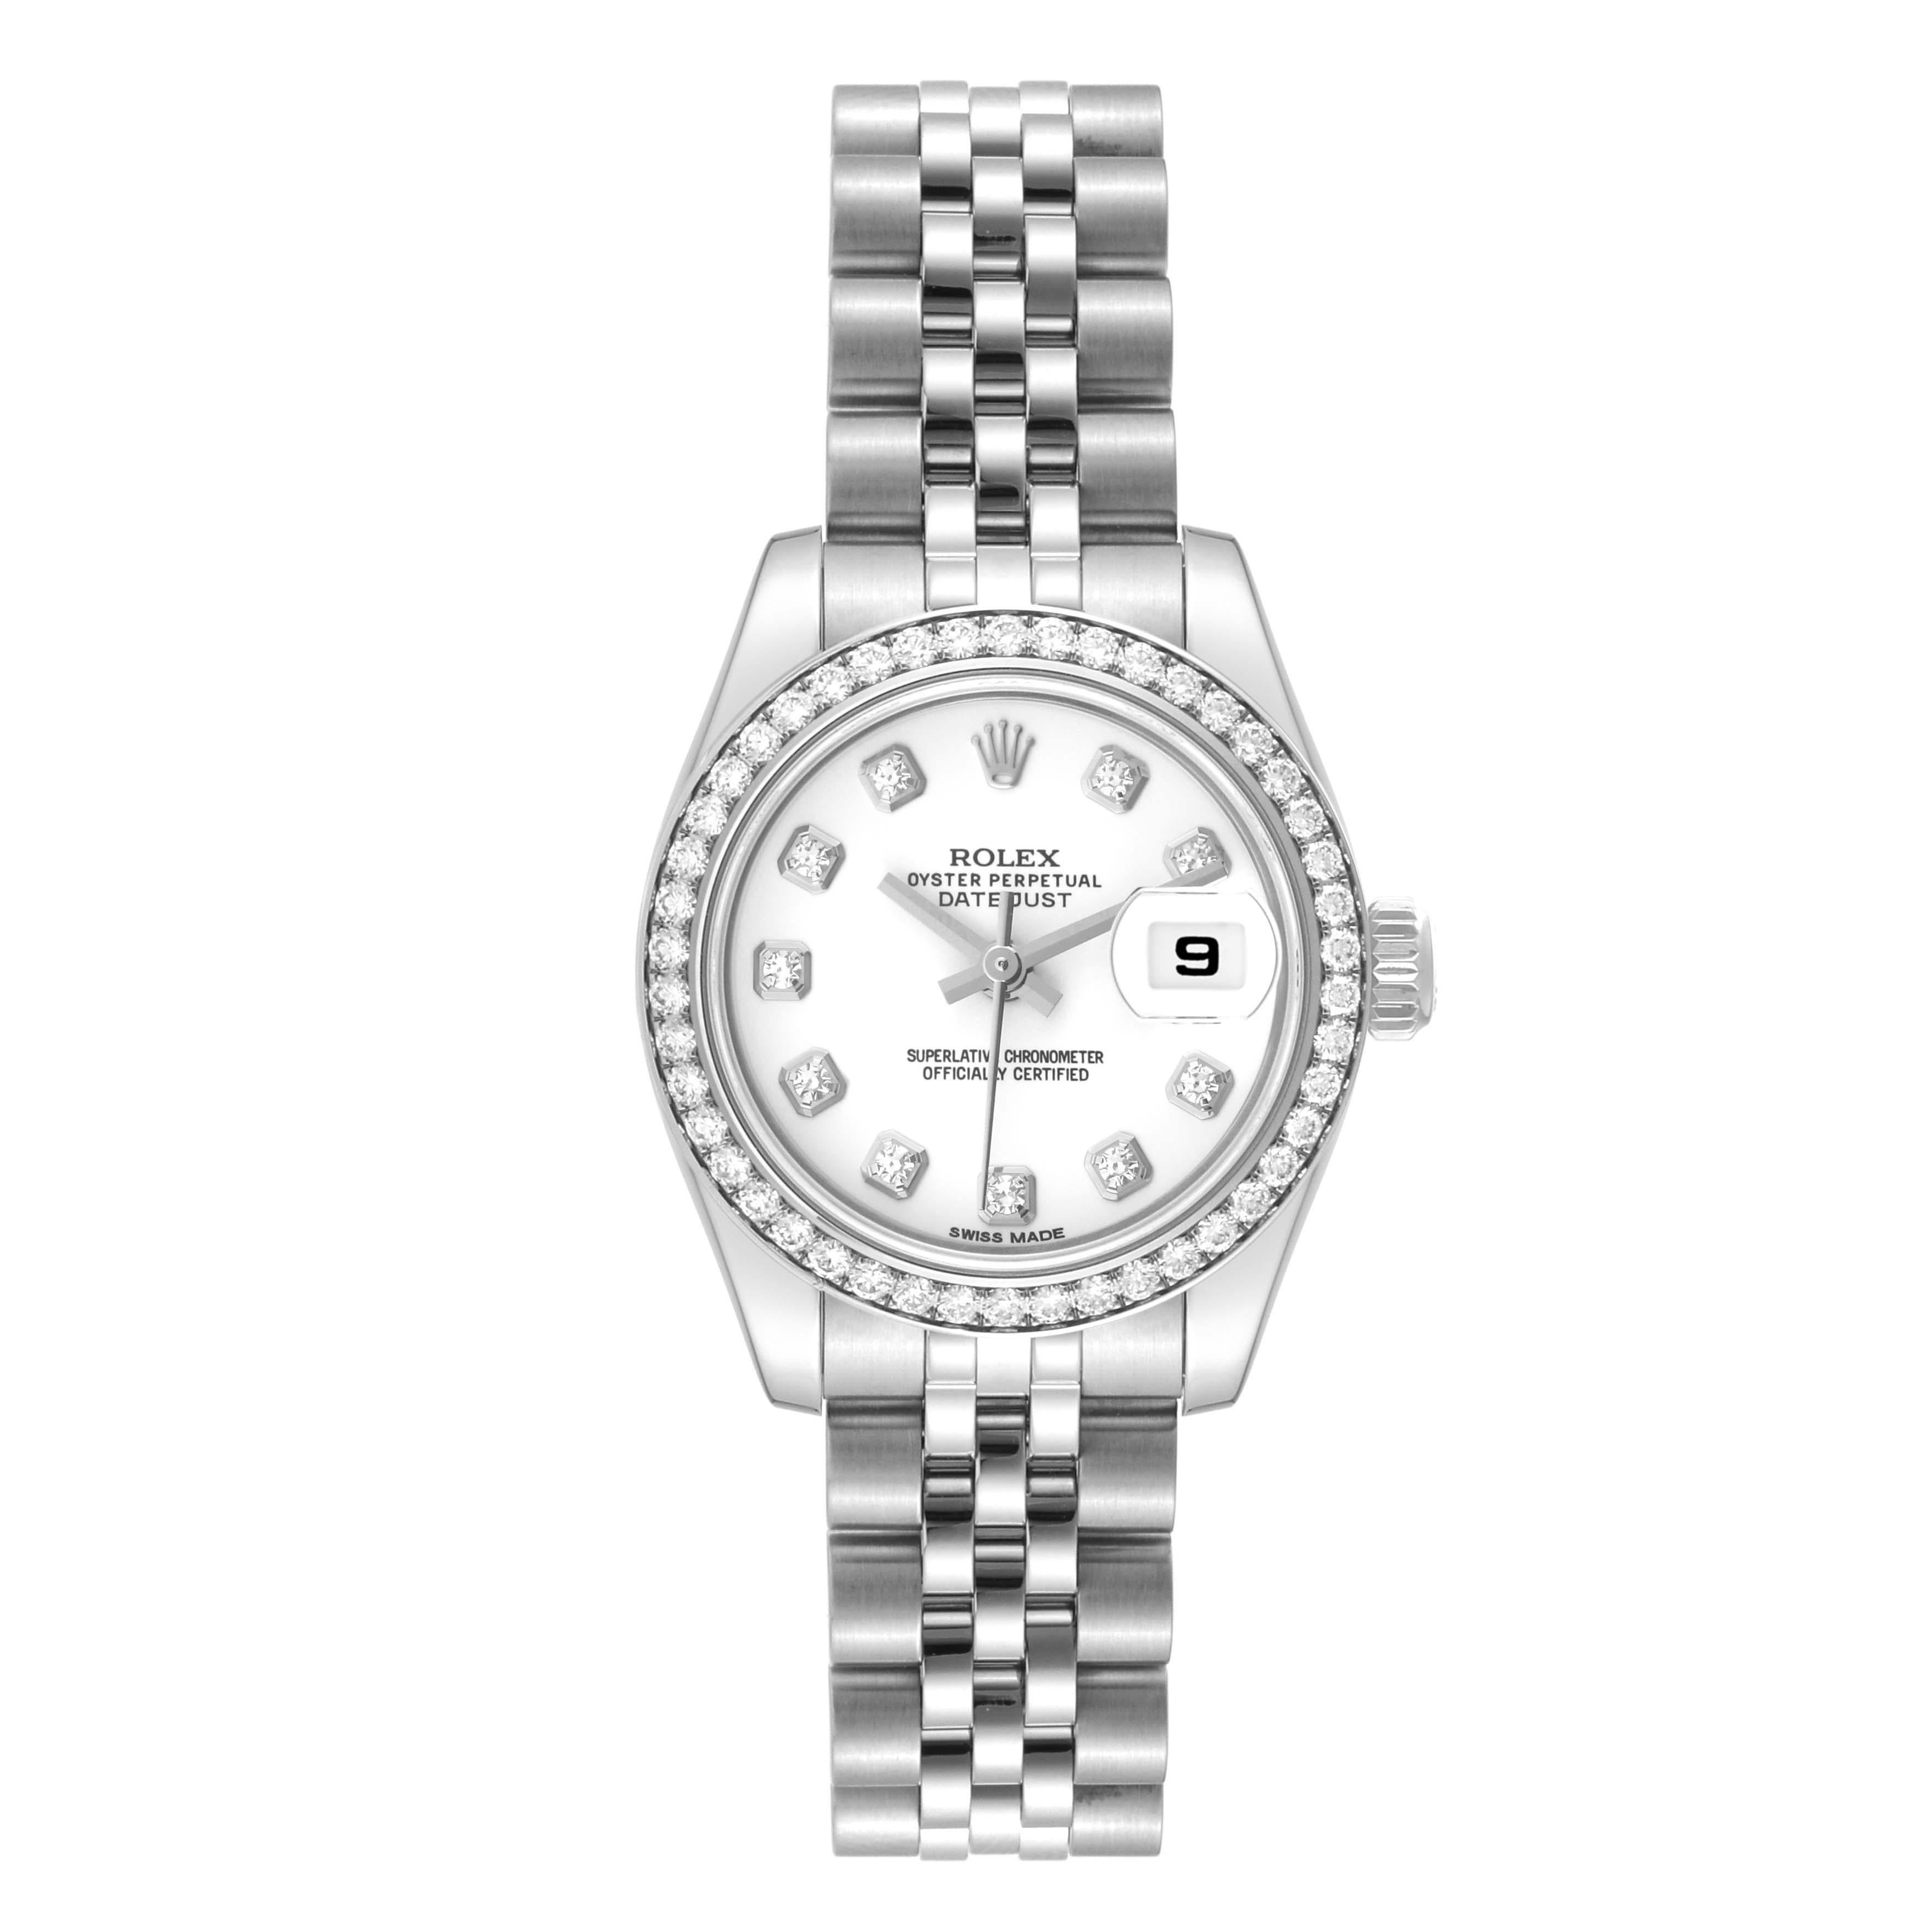 Rolex Datejust 26 Steel White Gold Diamond Ladies Watch 179384 Box Card. Mouvement automatique à remontage automatique, officiellement certifié chronomètre. Boîtier oyster en acier inoxydable de 26.0 mm de diamètre. Logo Rolex sur la couronne.